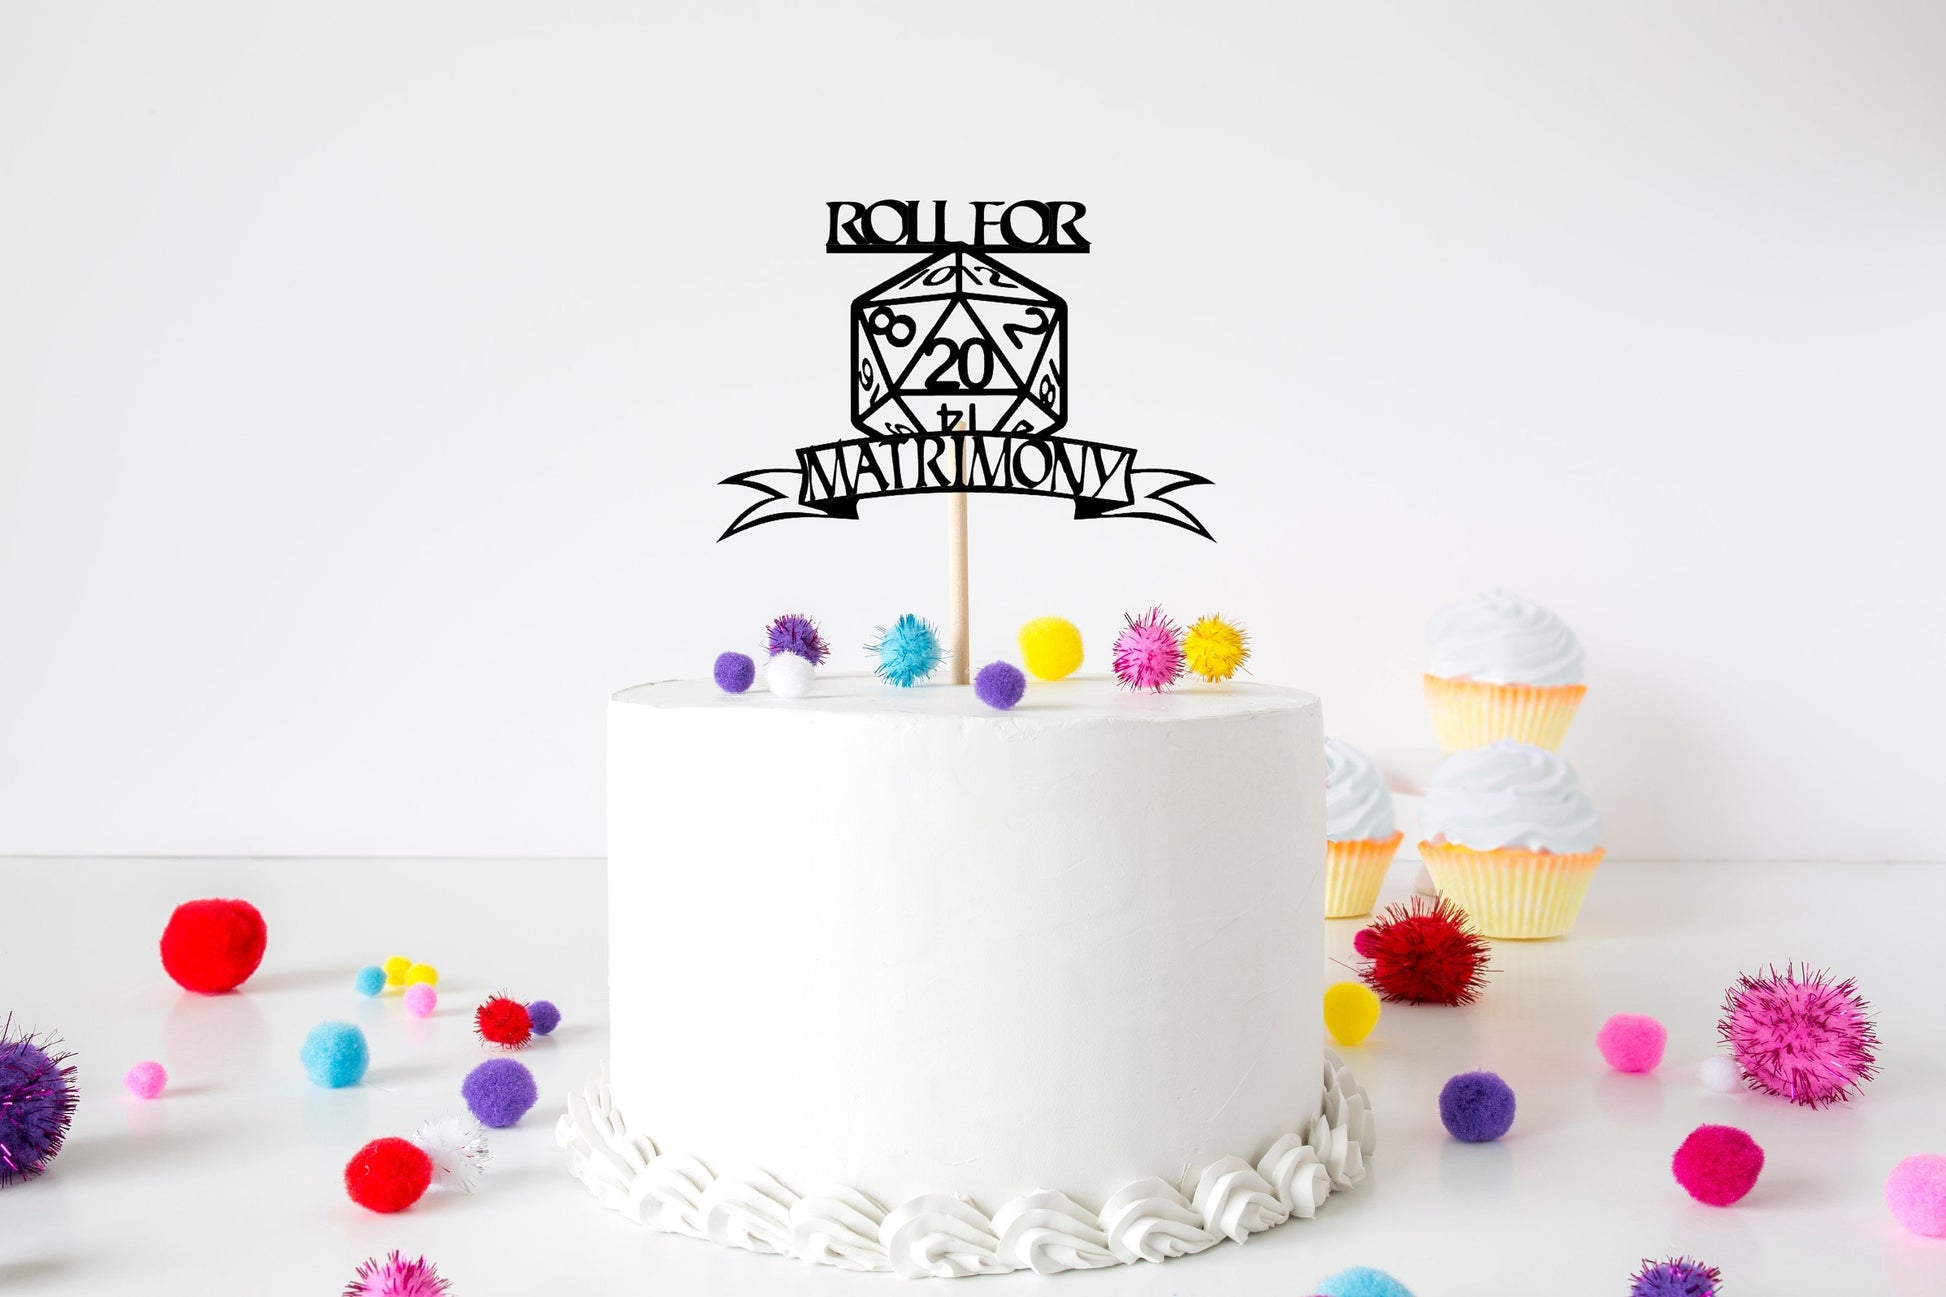 Roll For Matrimony D&D birthday cake topper - Resplendent Aurora